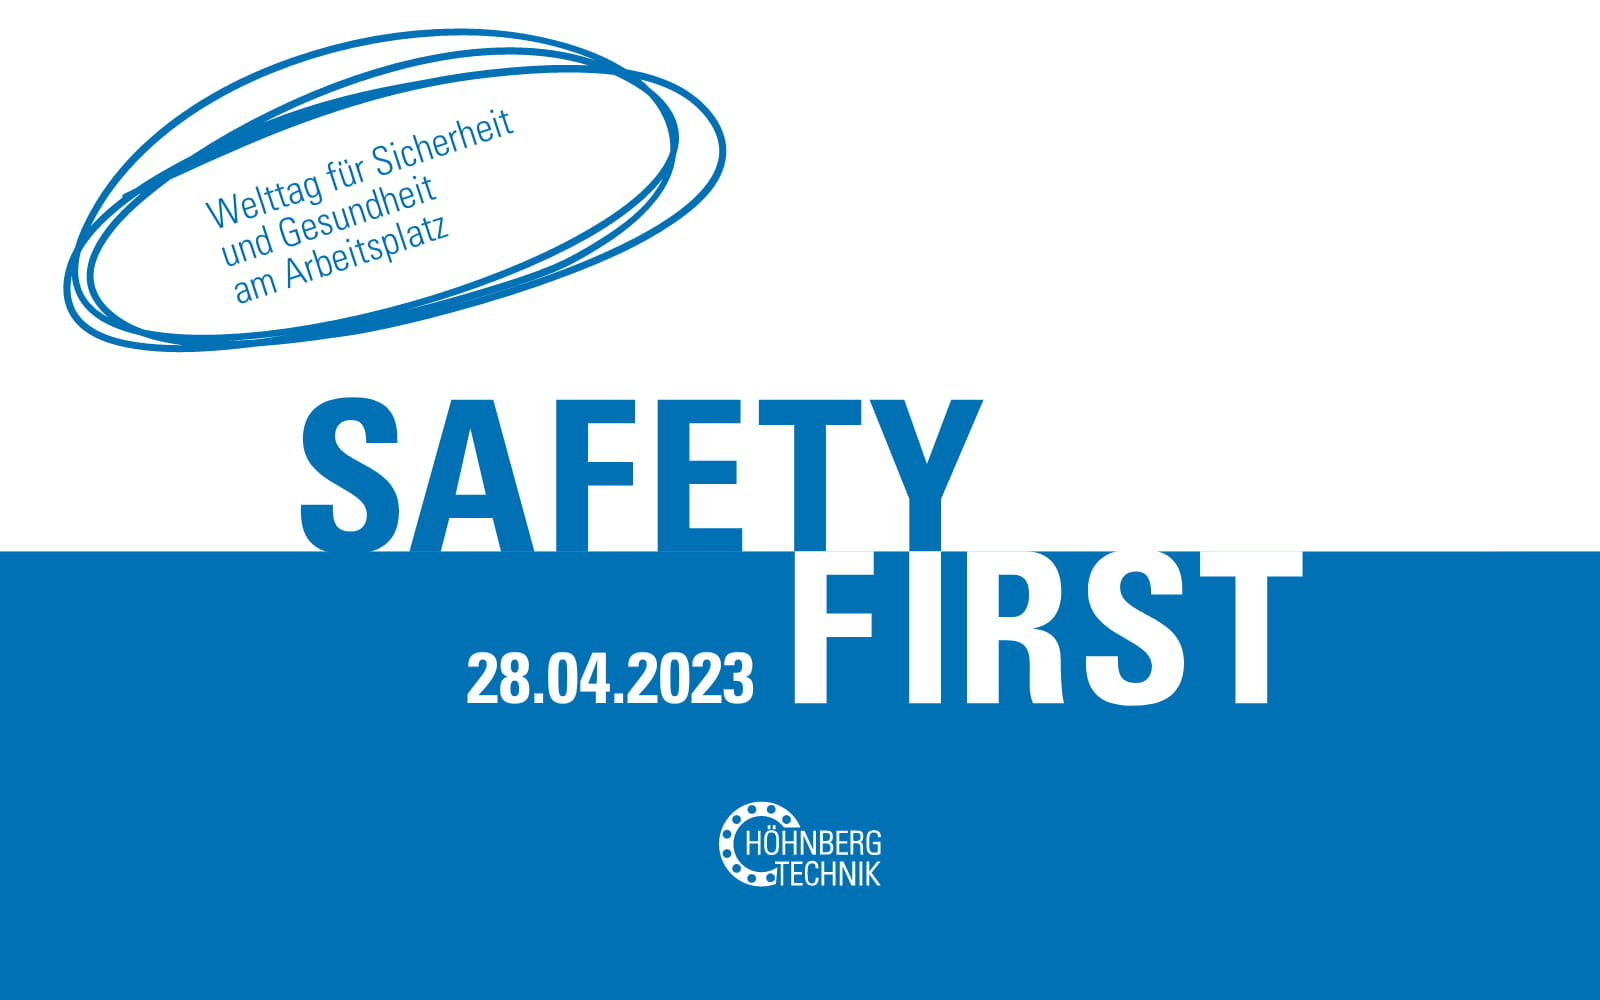 28.04.2023: Welttag für Sicherheit und Gesundheit am Arbeitsplatz